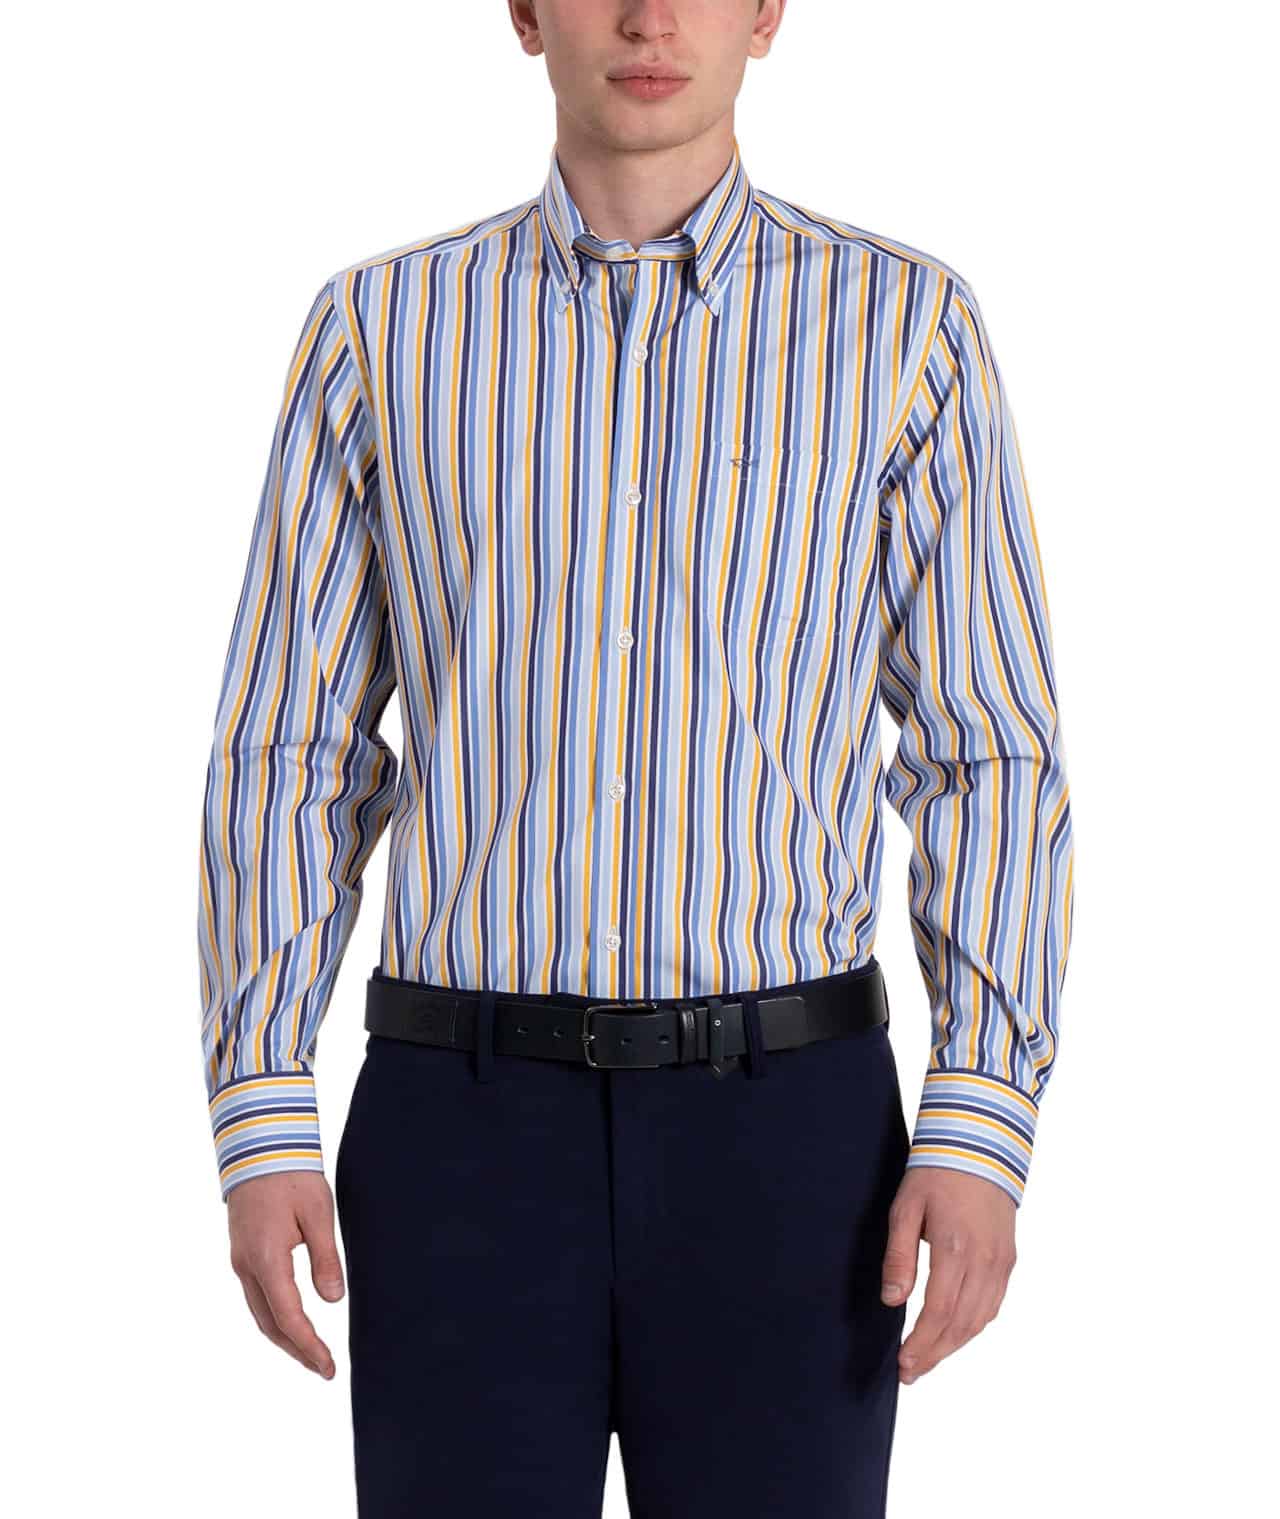 Male model men's striped shirt Paul Shark